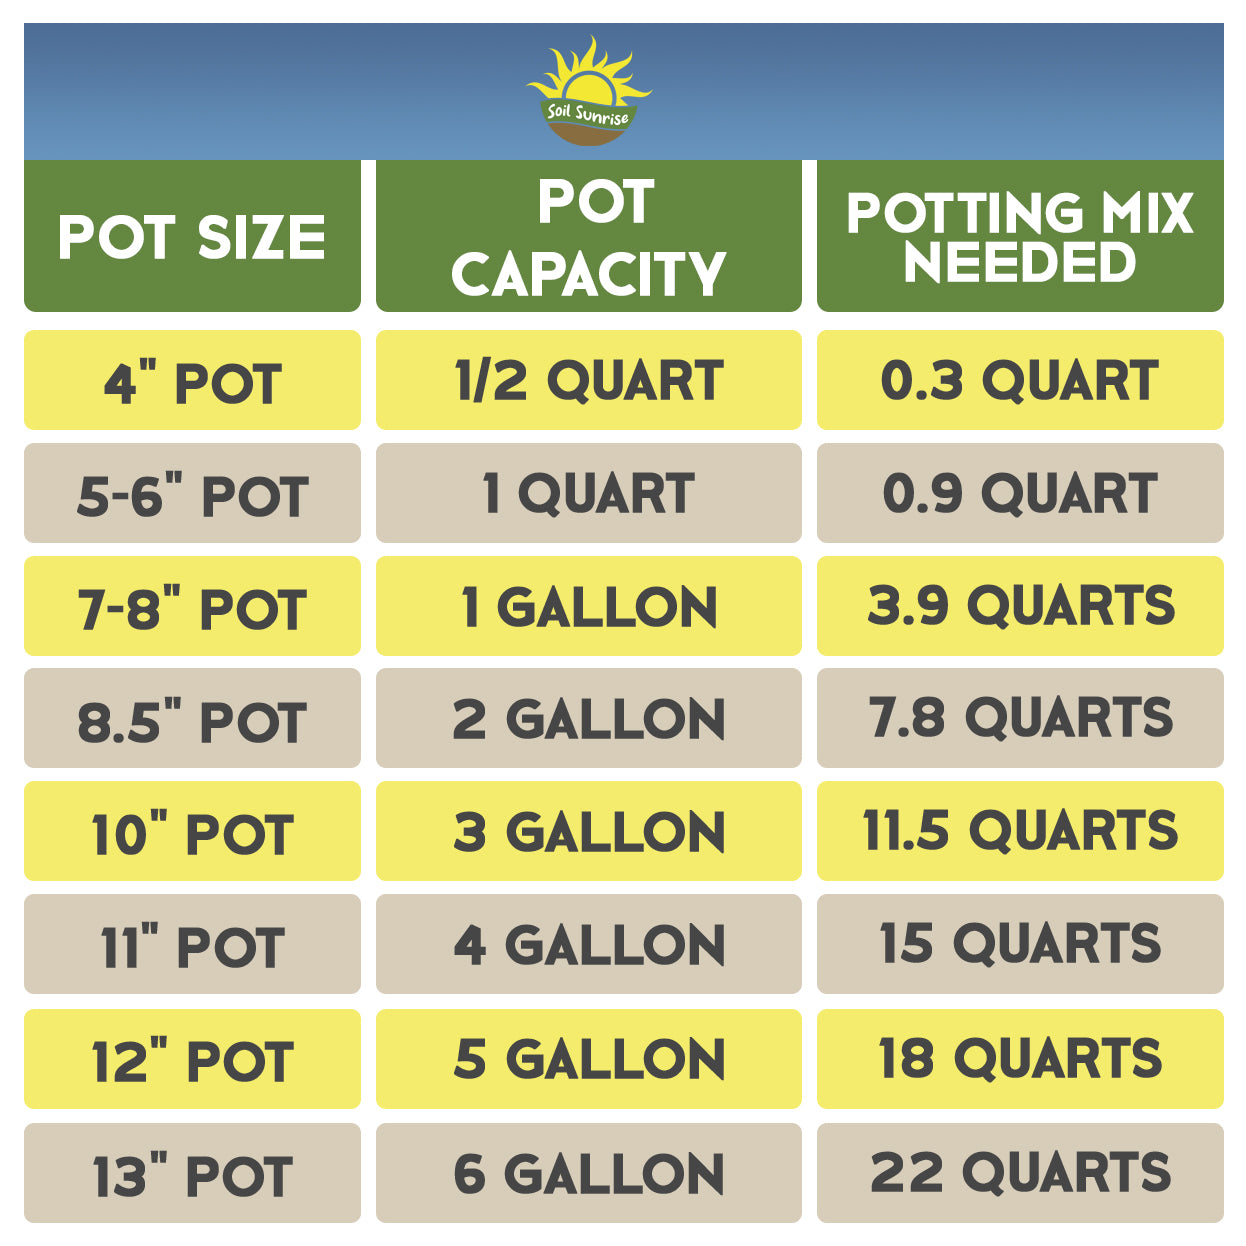 Anthurium Plant Potting Soil Mix (4 Quarts) - SSKIT008